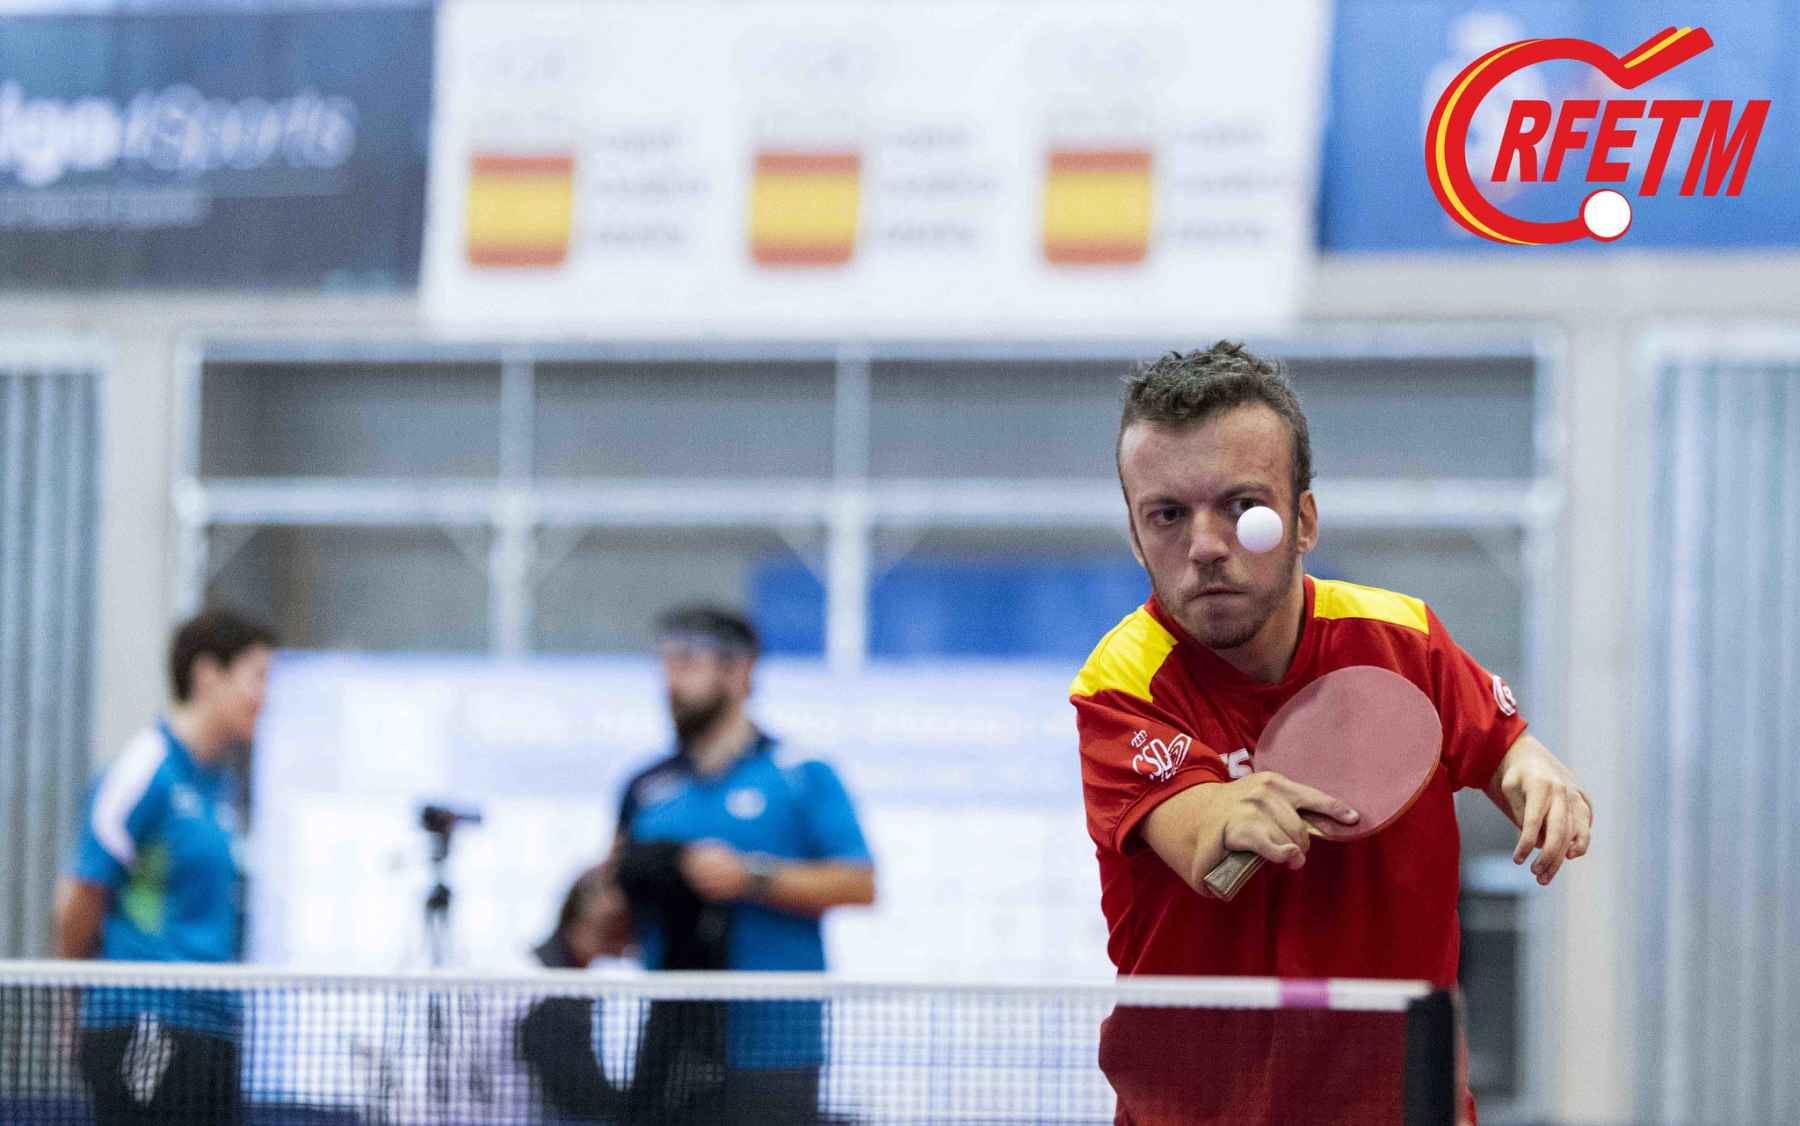 Alberto Seoane participando en un torneo internacional en España (Foto: Alvaro Diaz)